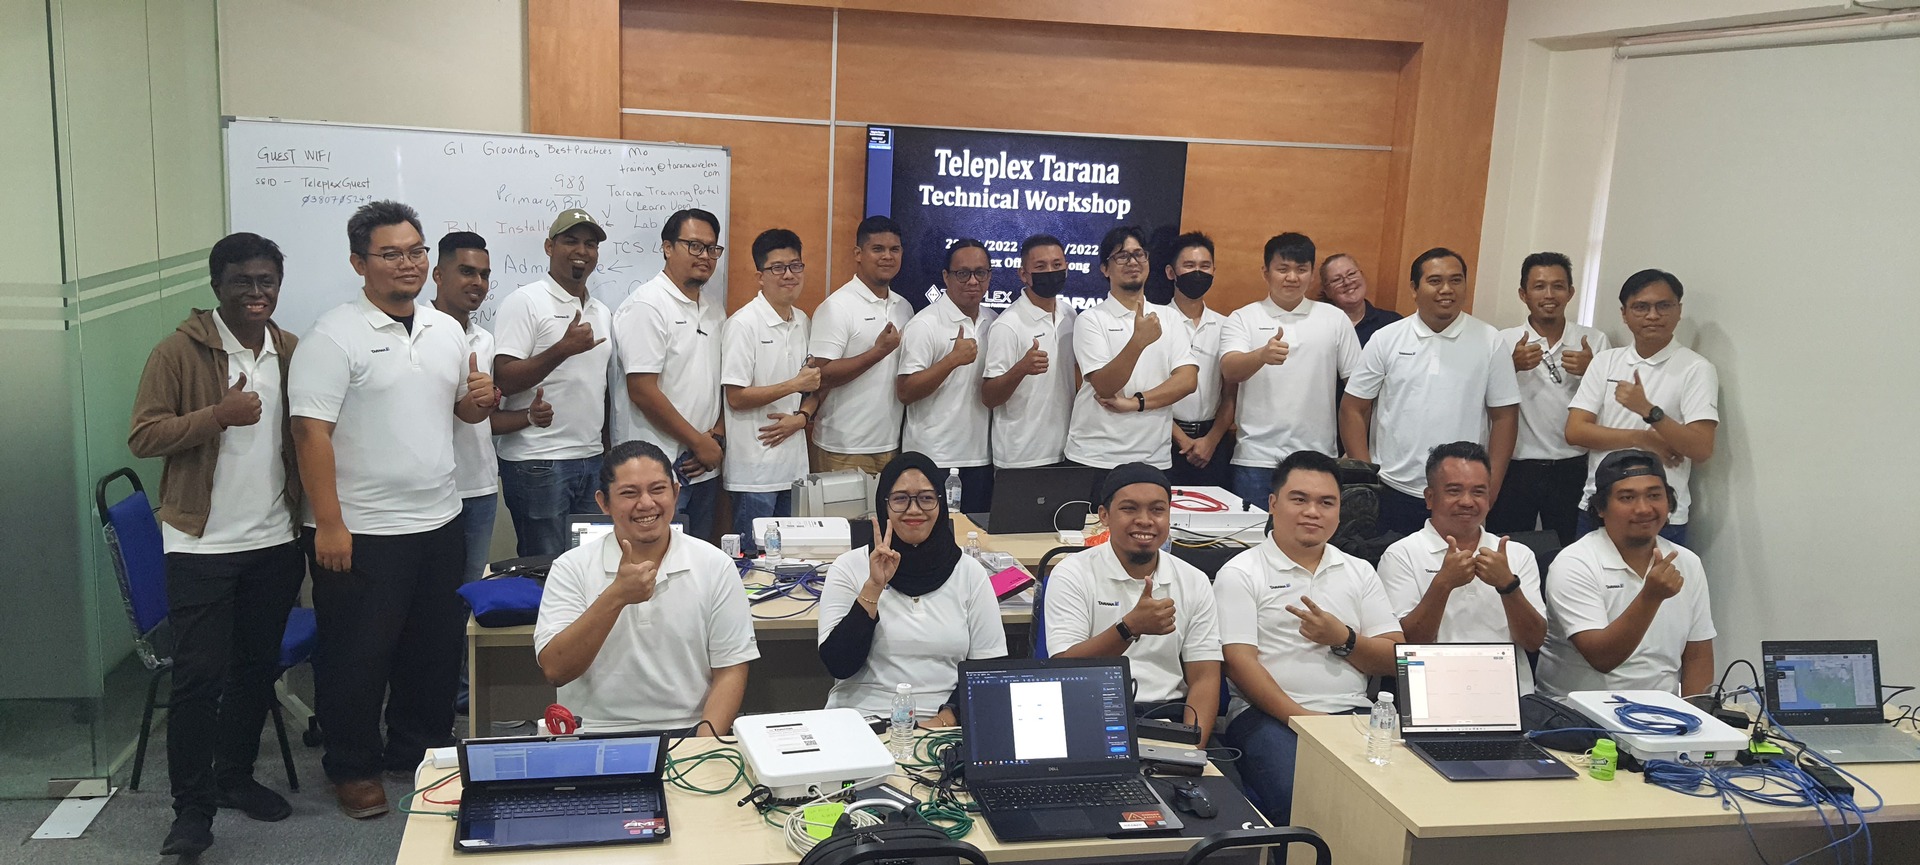 Teleplex Tarana Technical Workshop 2022